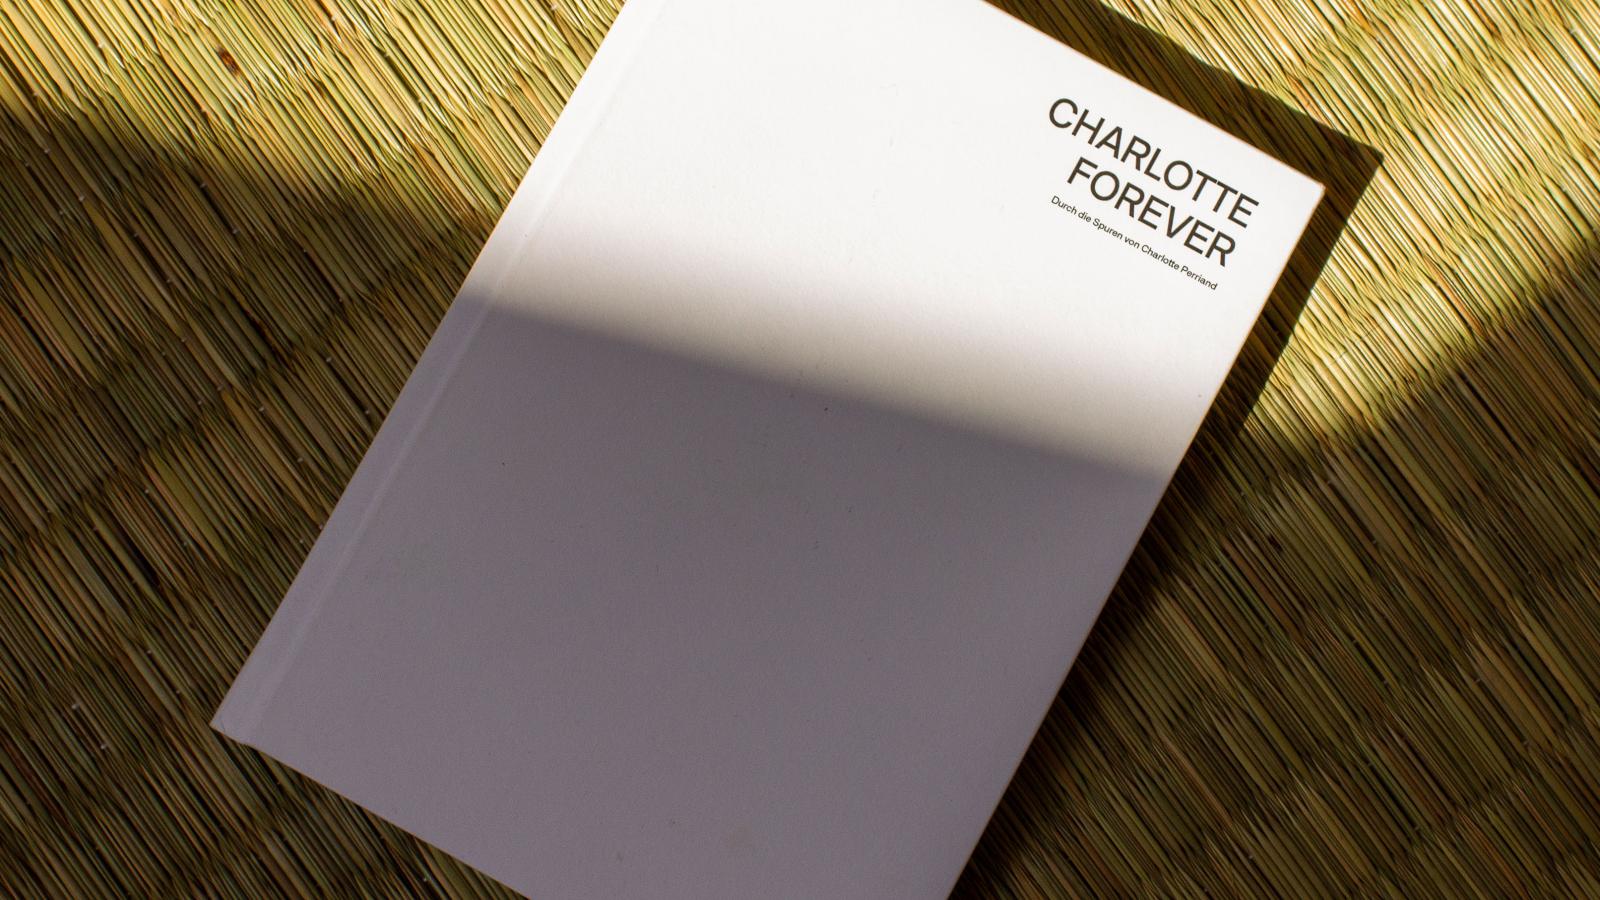 Das Bild zeigt das Katalogcover der Publikation CHARLOTTE FOREVER - Durch die Spuren von Charlotte Perriand